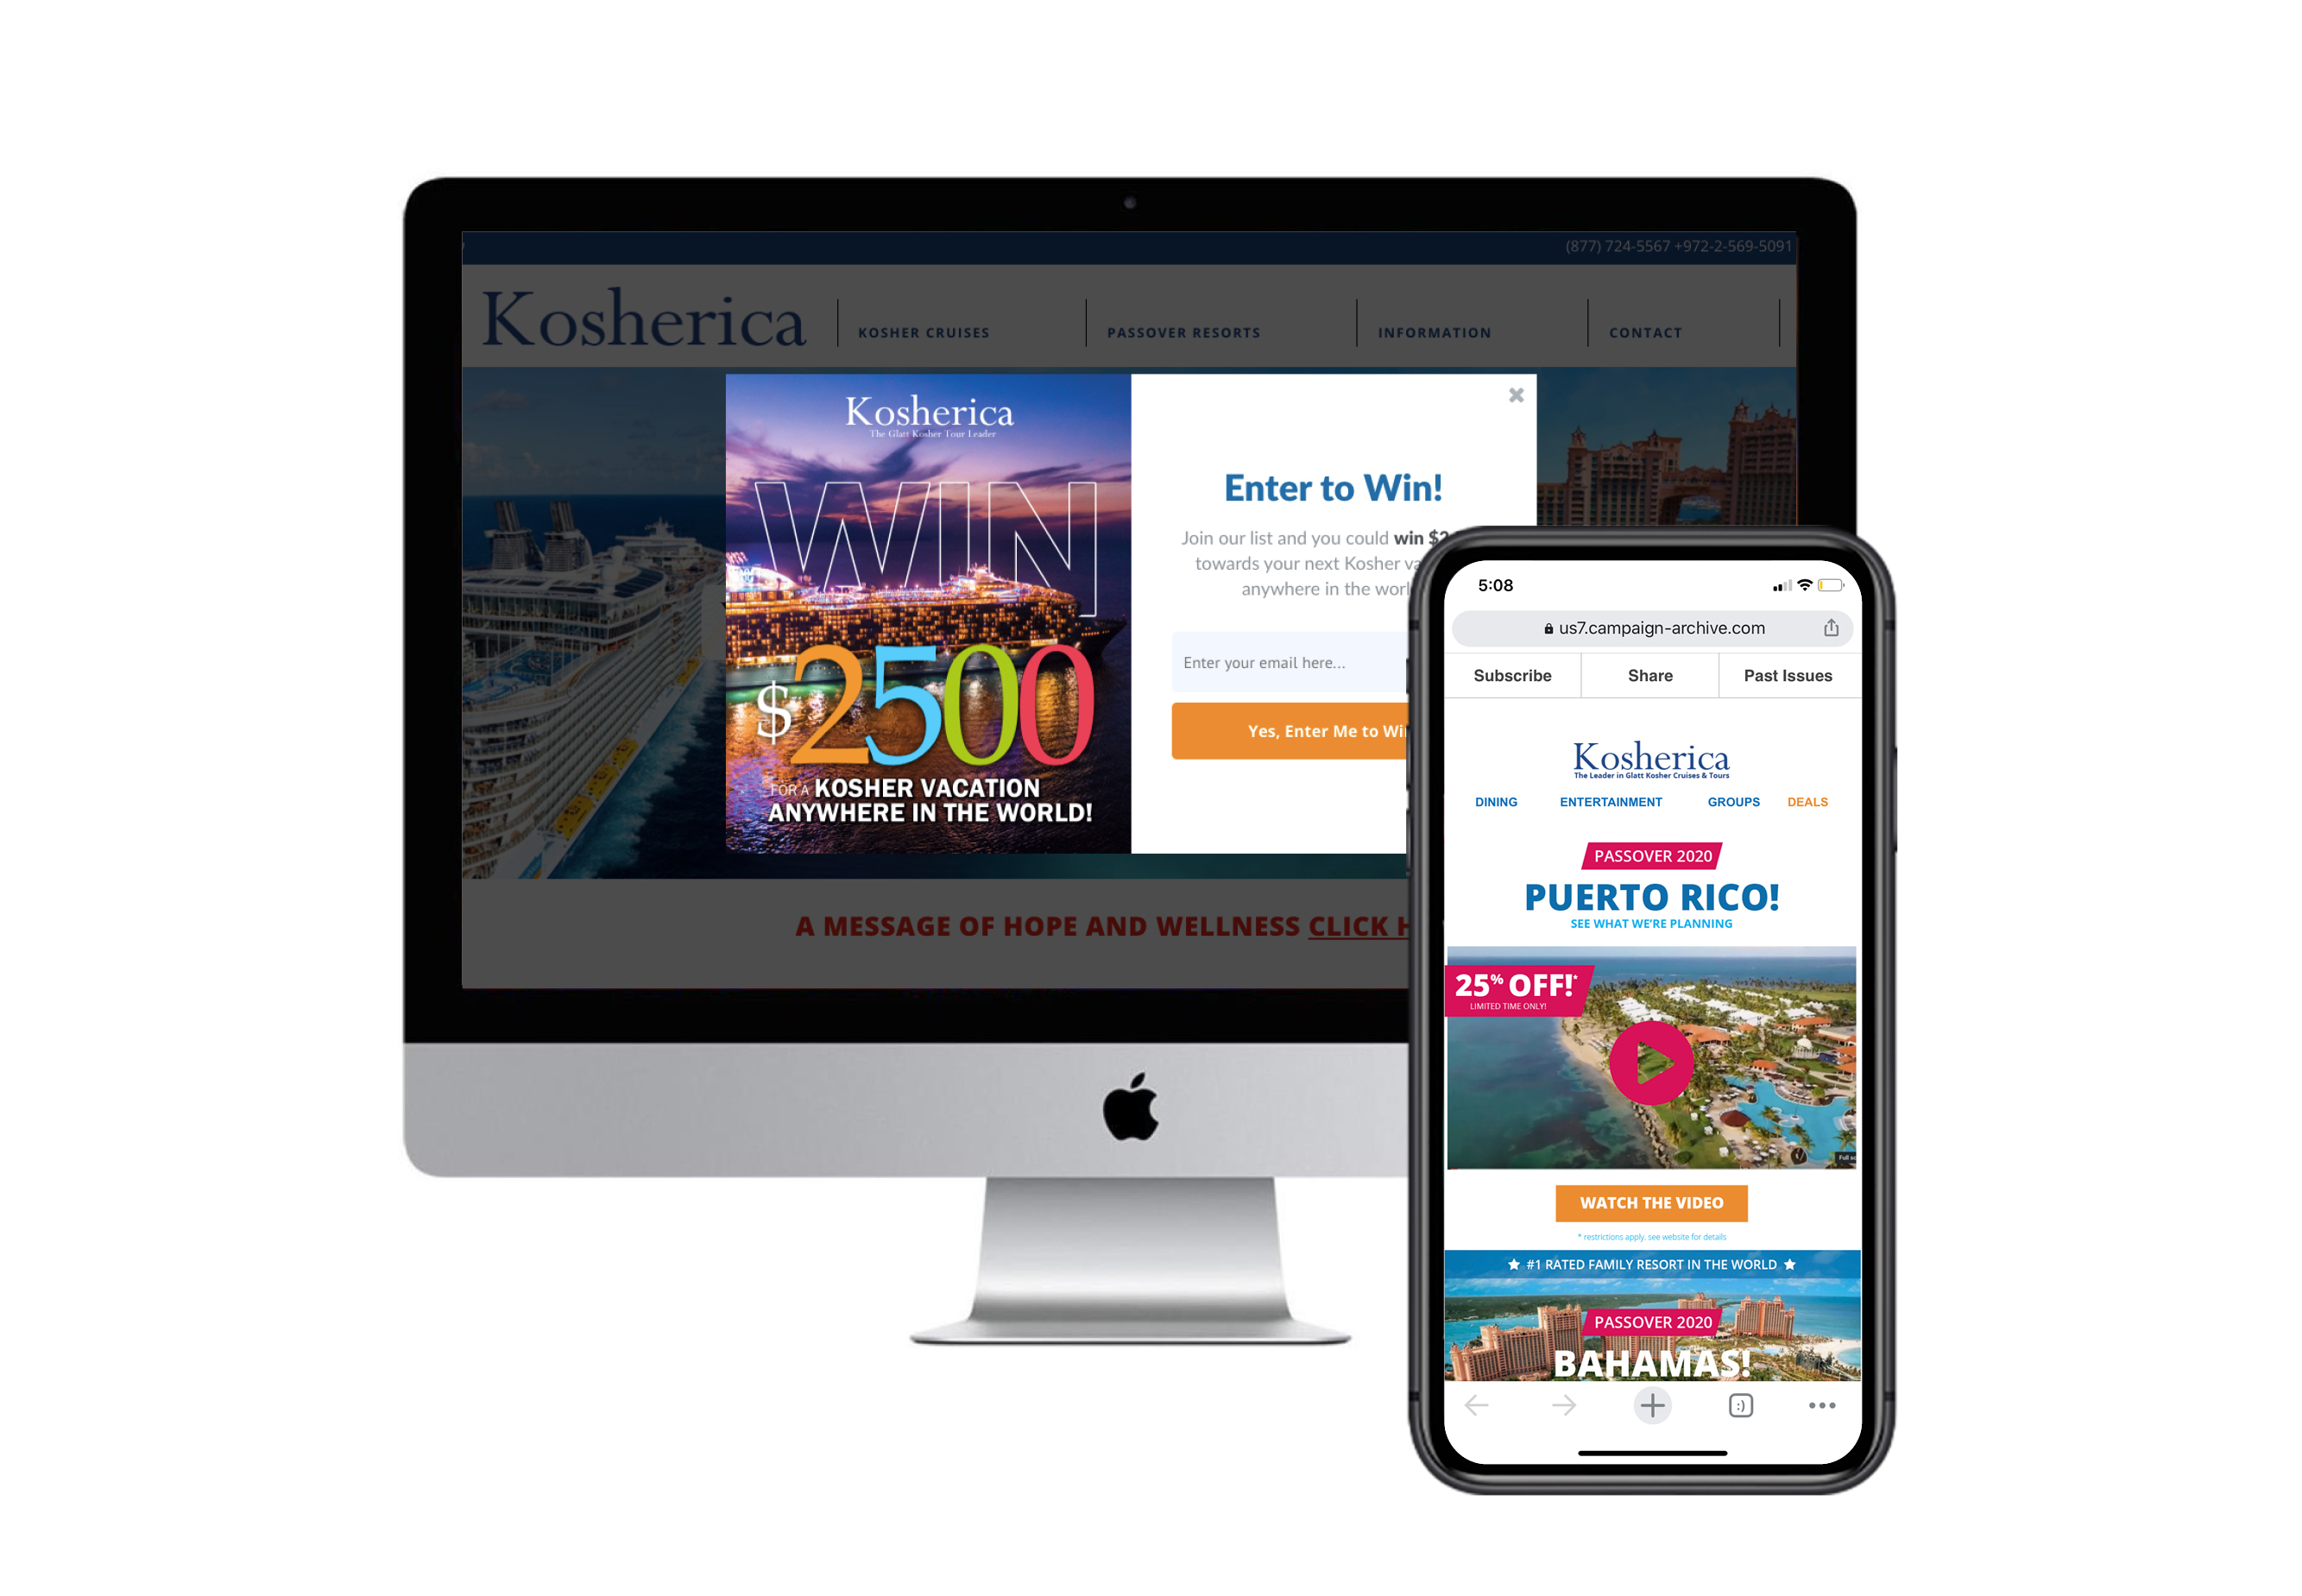 Kosherica Cruises | Email Marketing Case Study | Henry Isaacs Marketing